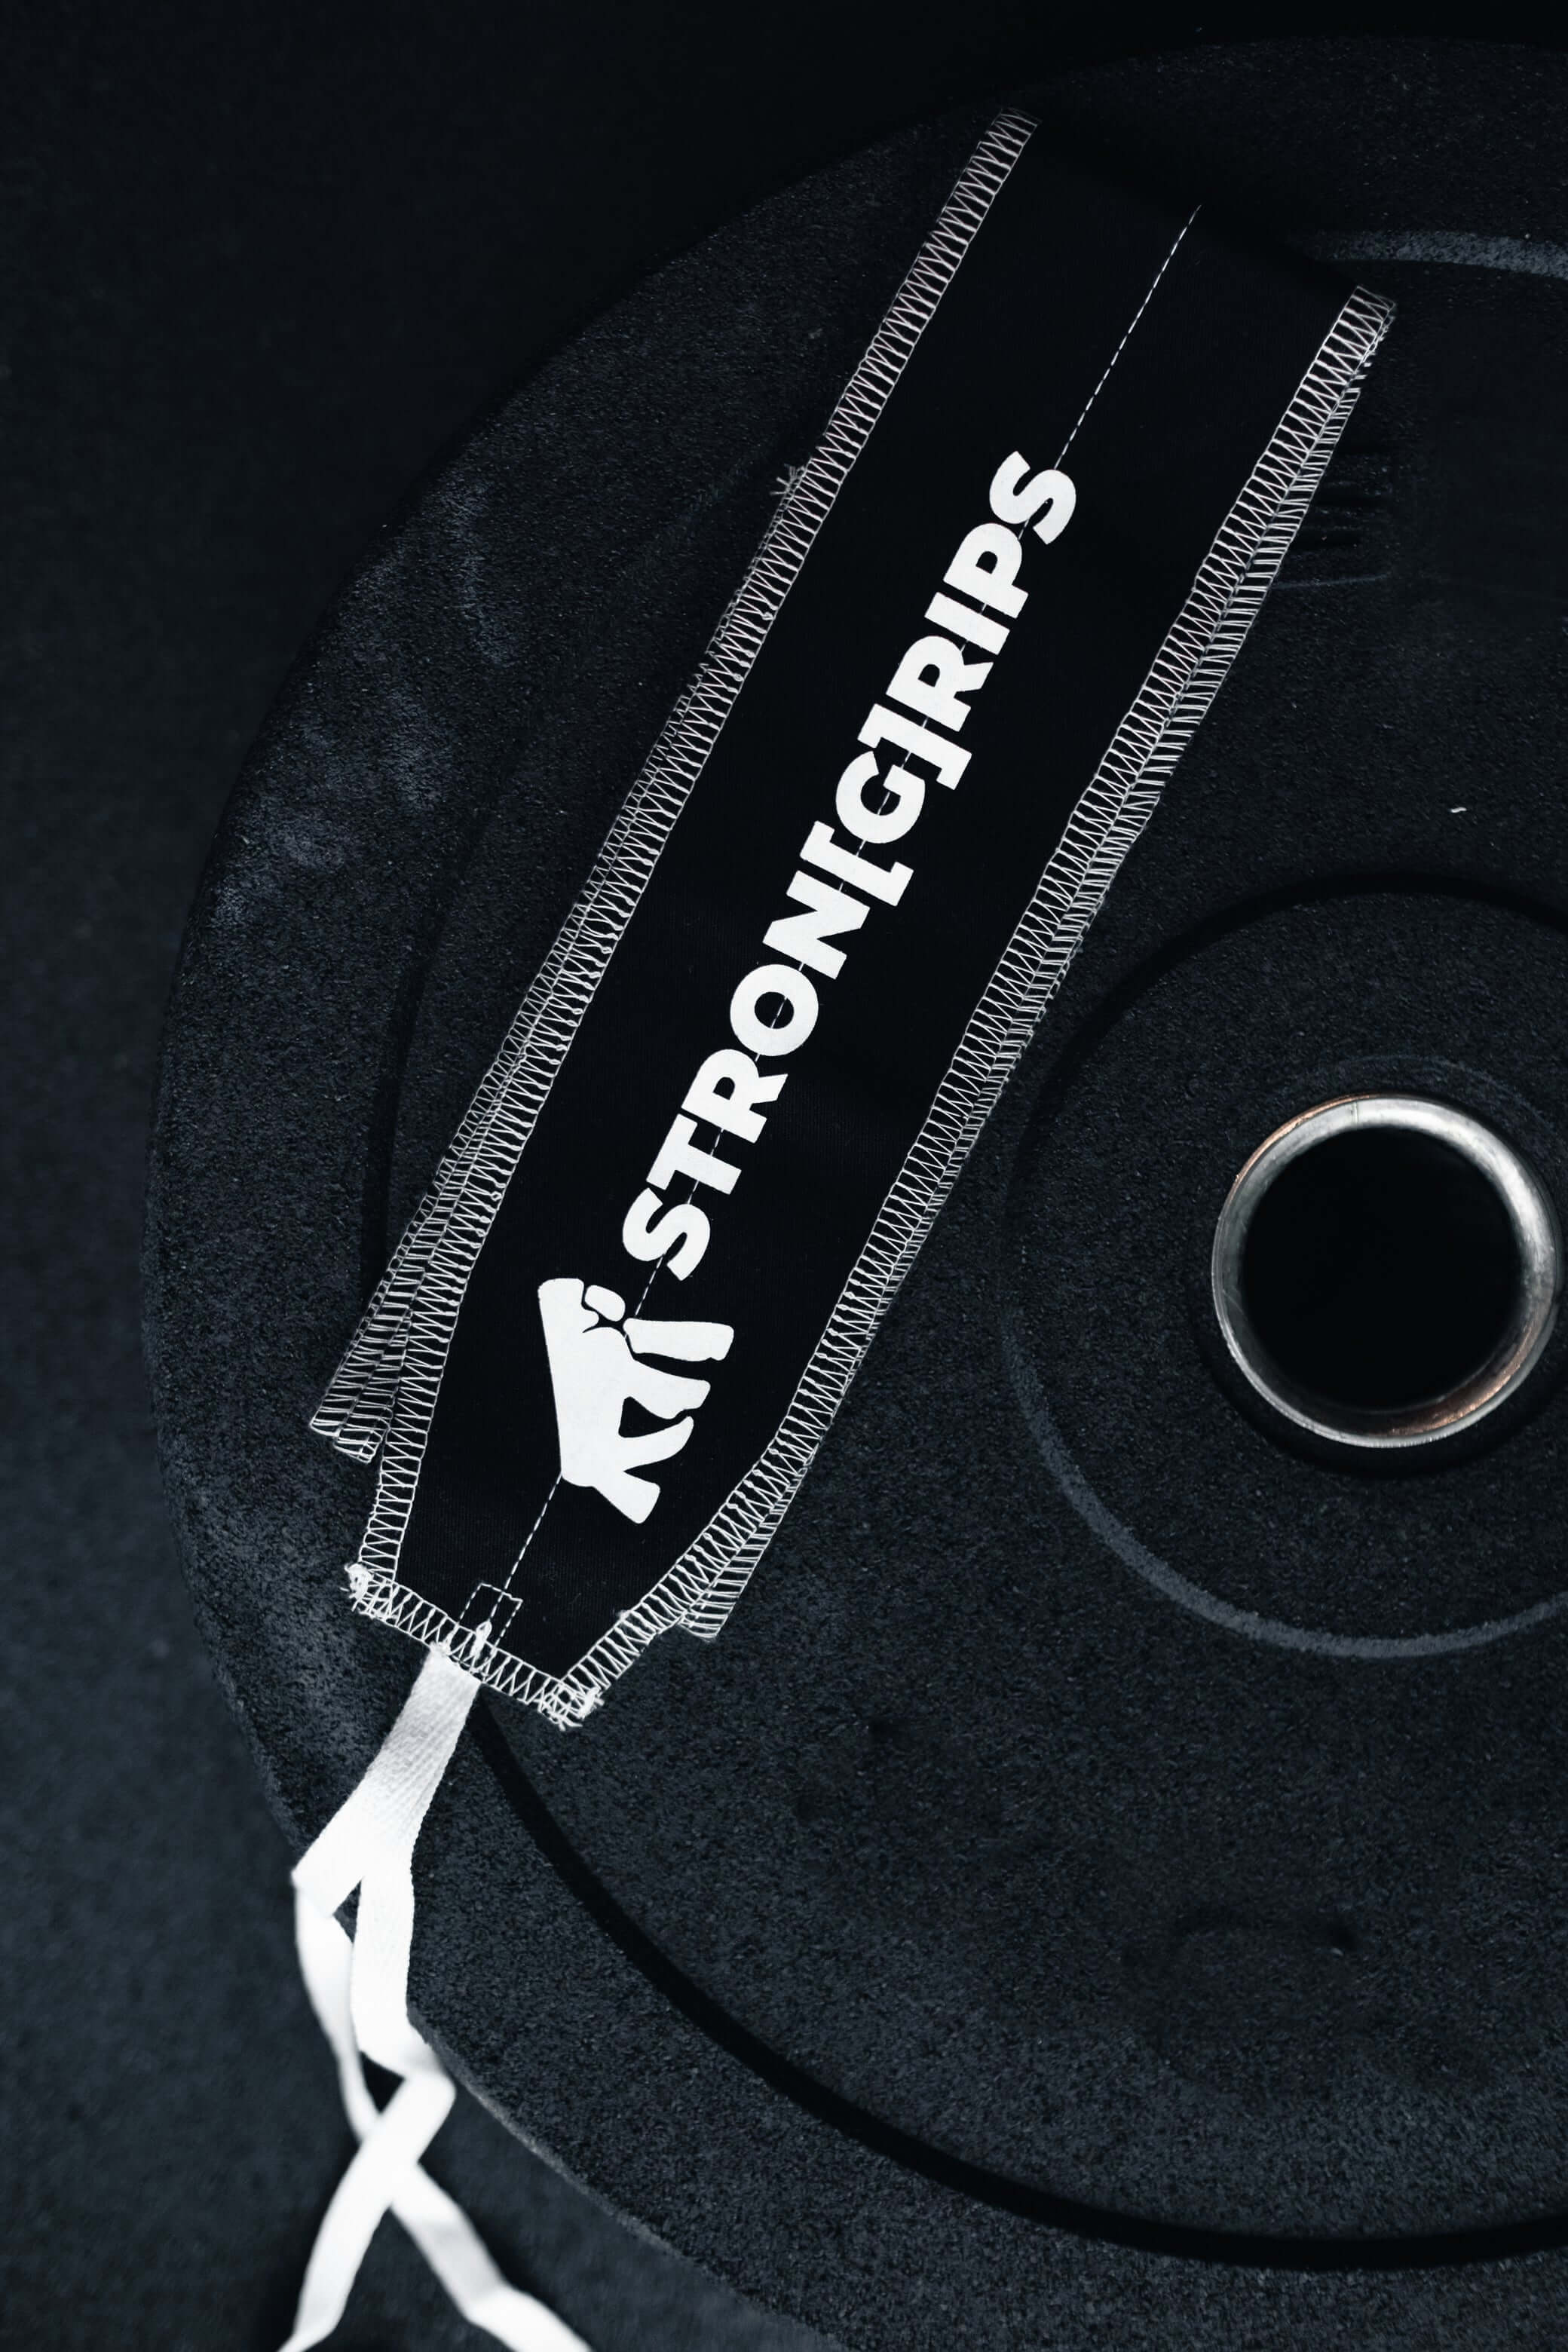 En güçlü bilek desteği için StronGrips Bileklik